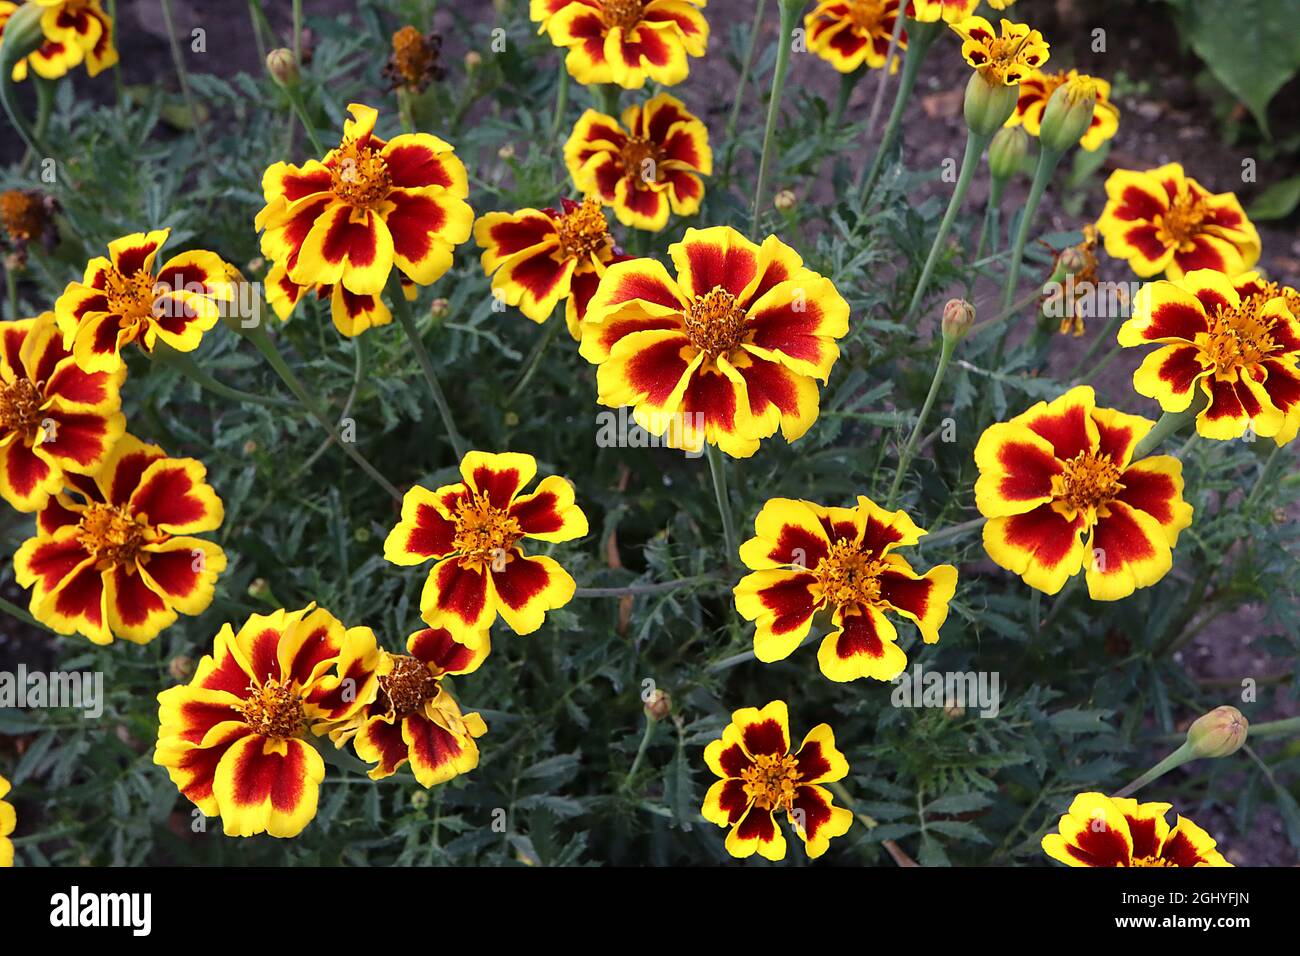 Tagetes patula ‘disco Marietta’ Marigold francese Marietta - fiori rossi profondi con ampi margini gialli e fiori a disco gialli, agosto, Inghilterra, Regno Unito Foto Stock